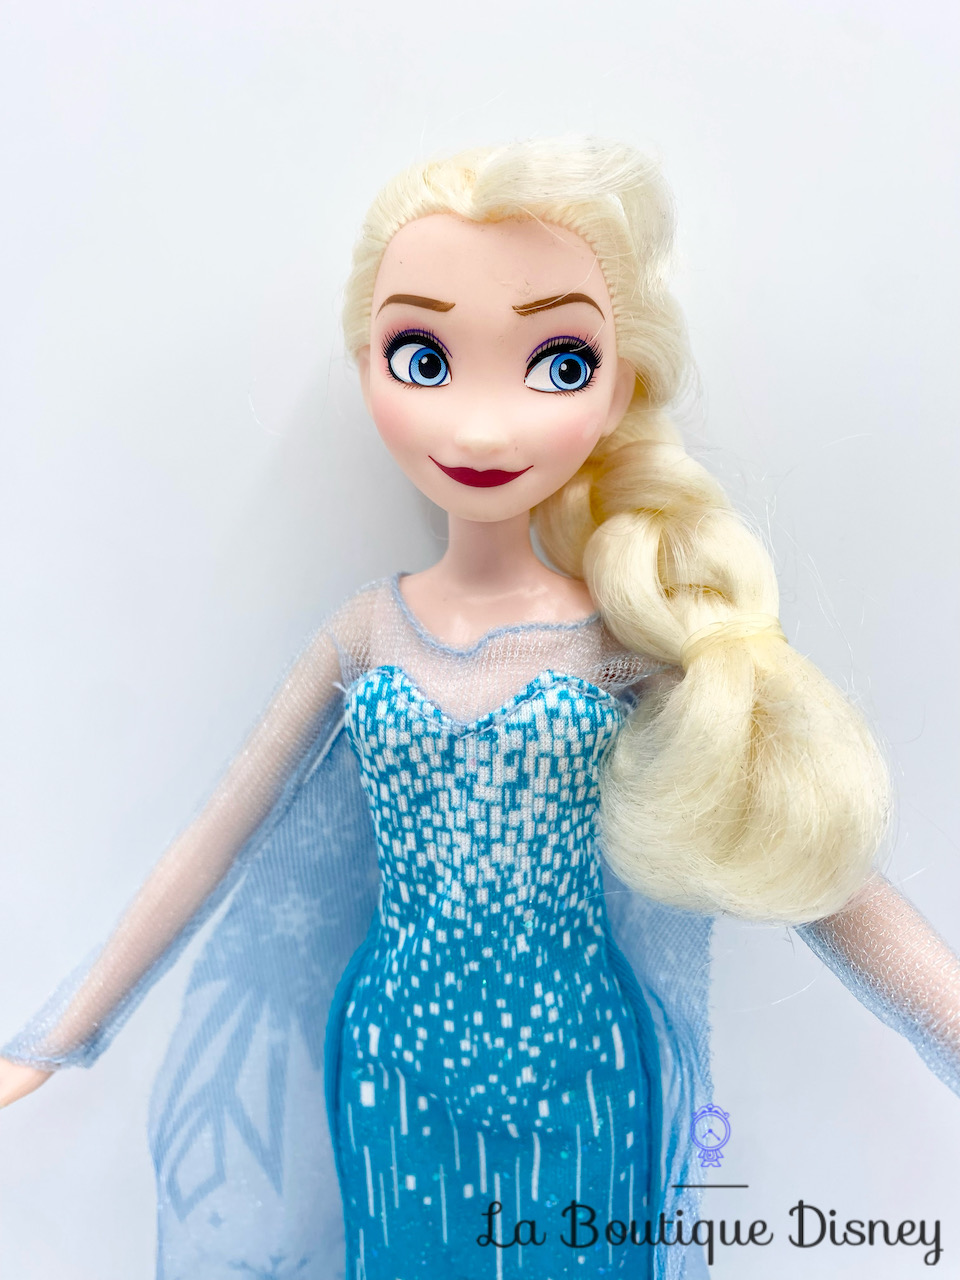 Poupée Elsa poussiere d'étoiles LA REINE DES NEIGES 2 : la poupée